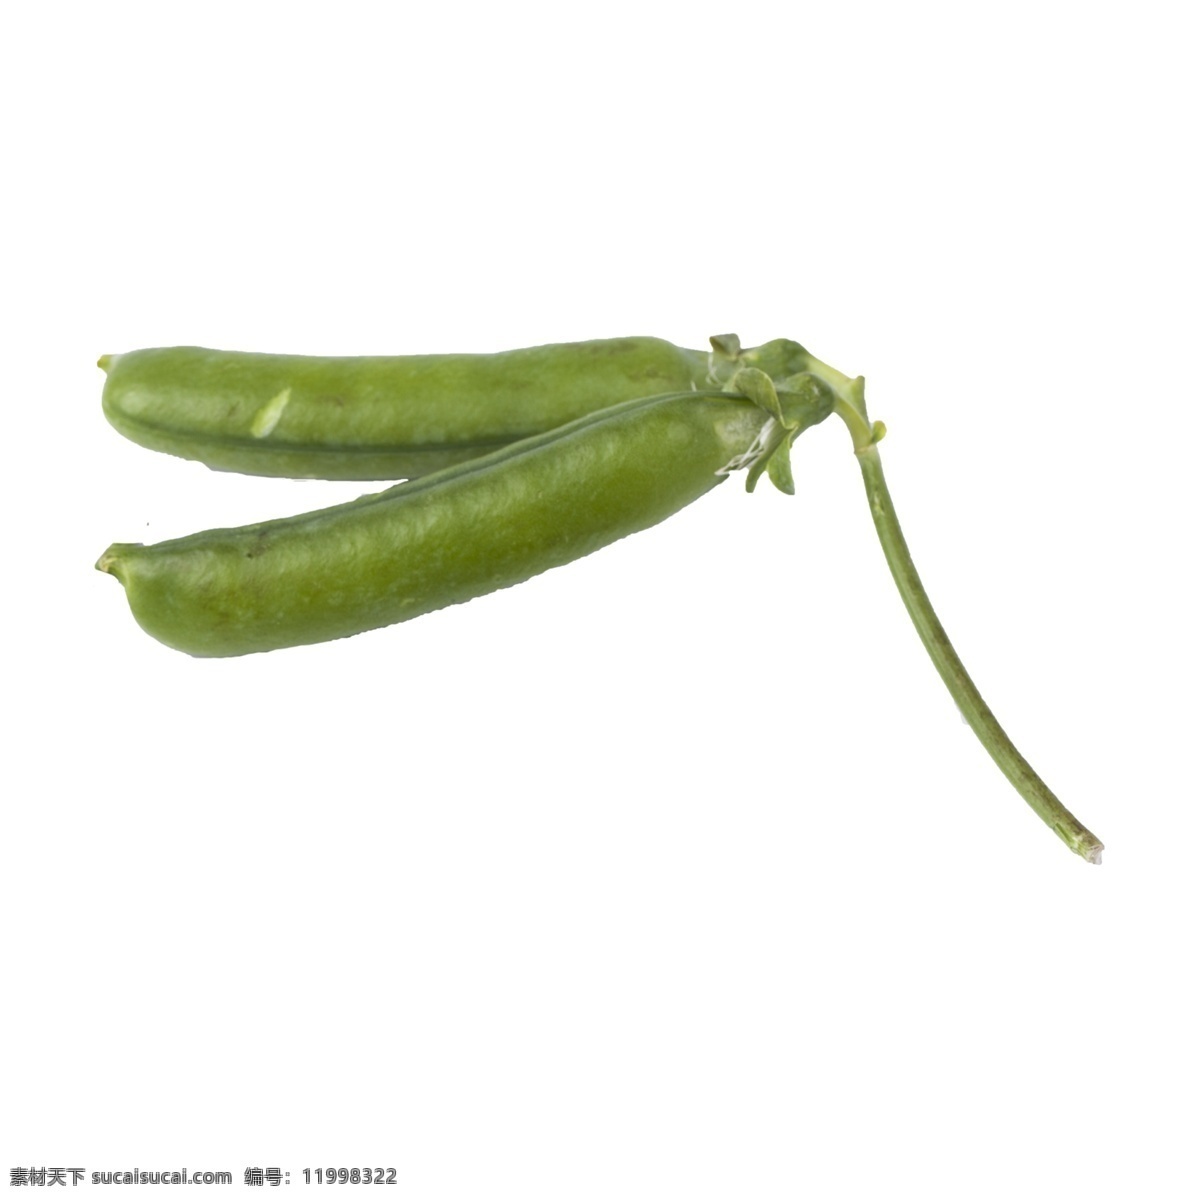 豌豆 免 抠 绿色蔬菜 豆类蔬菜 豌豆免抠 有营养的蔬菜 有营养的豌豆 蔬菜 需要剥的蔬菜